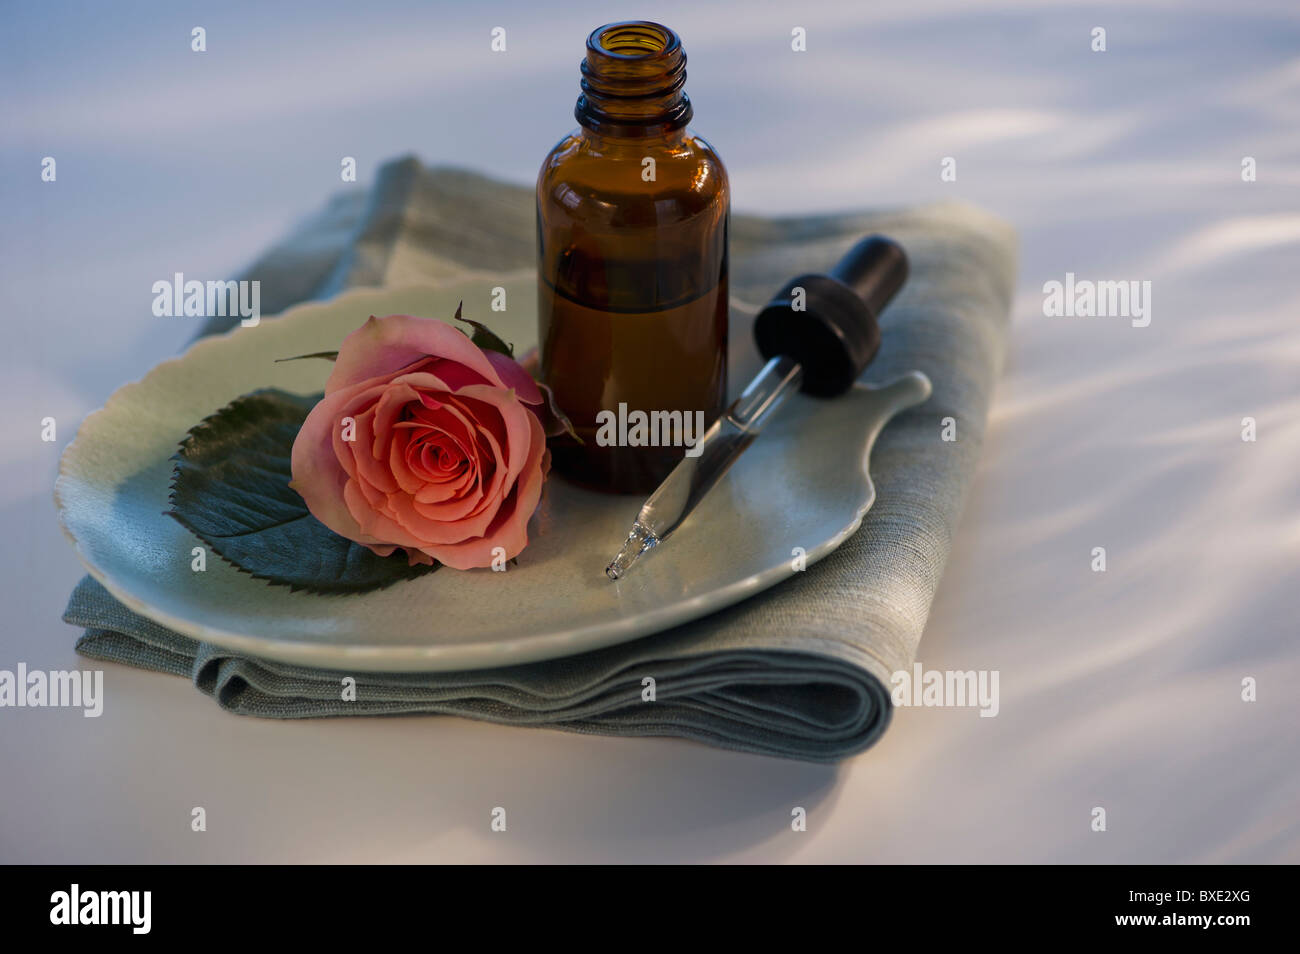 Aceite esencial y Rose en la bandeja Foto de stock